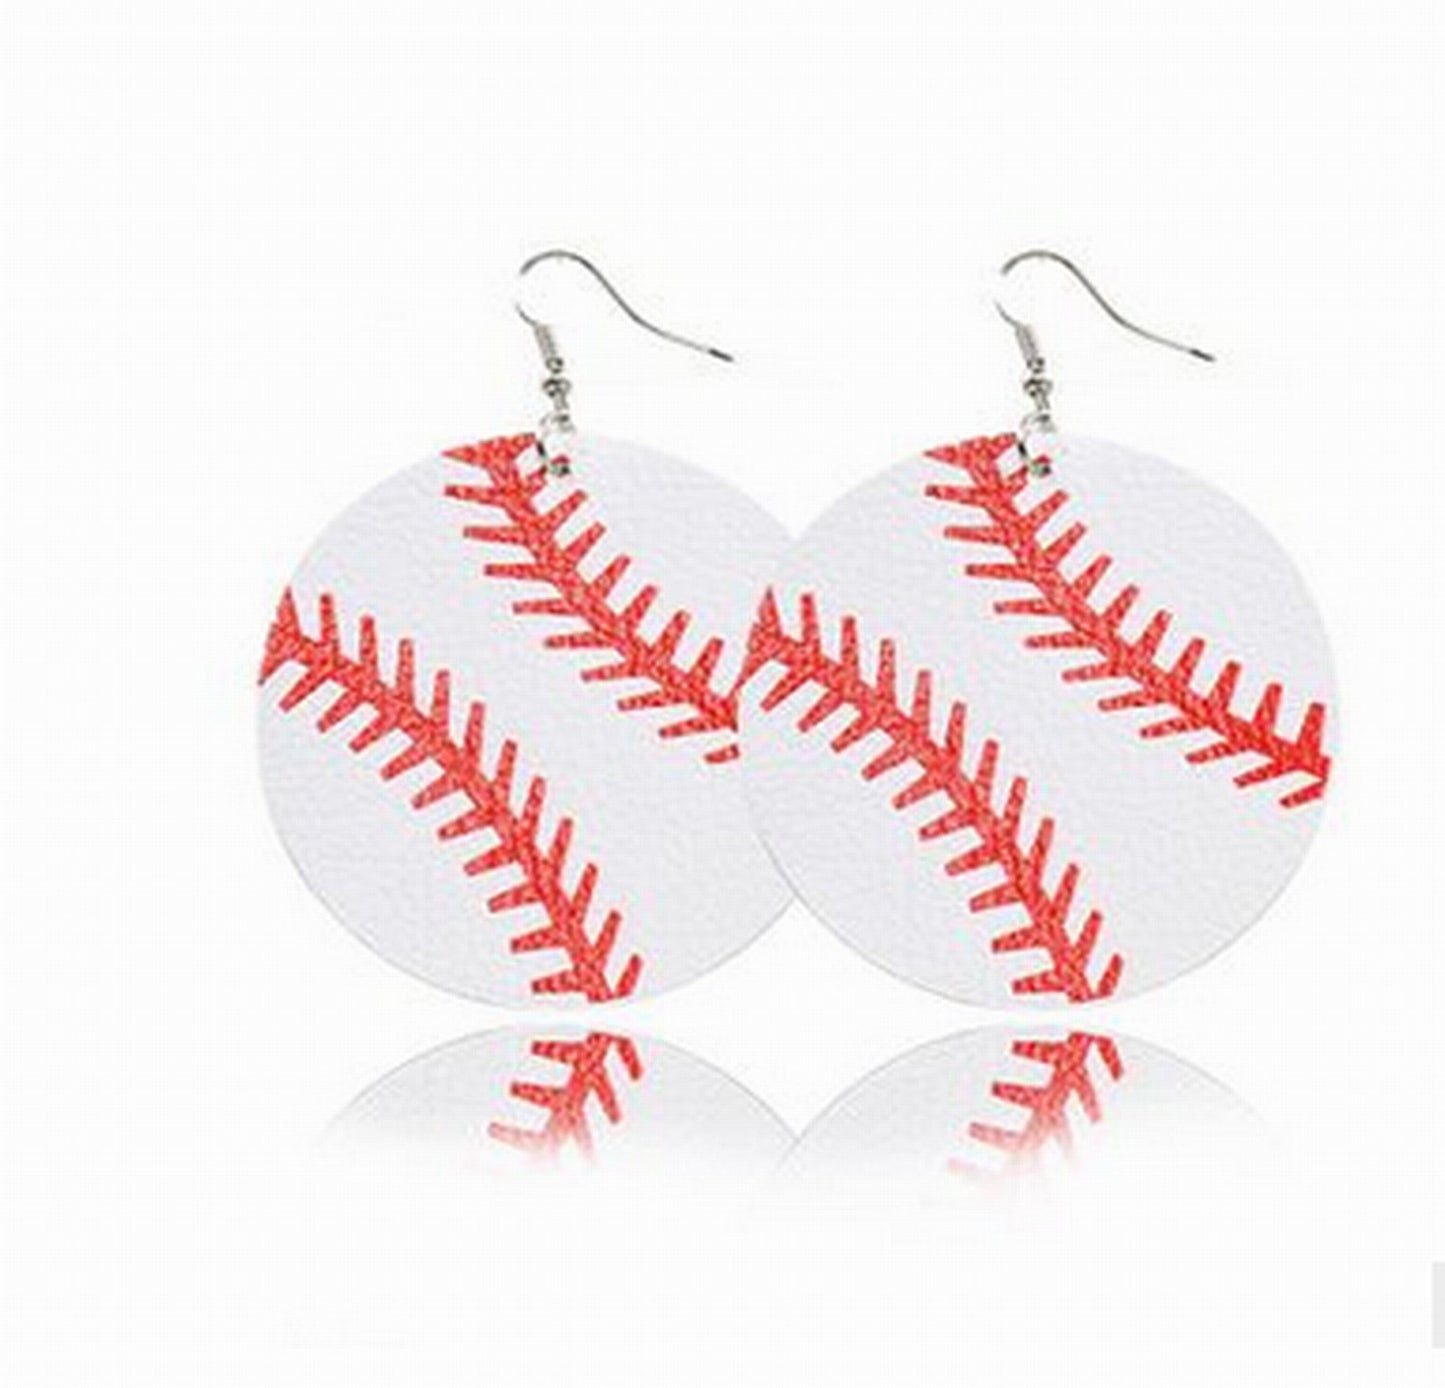 Leather Baseball Earrings Wholesale Softball